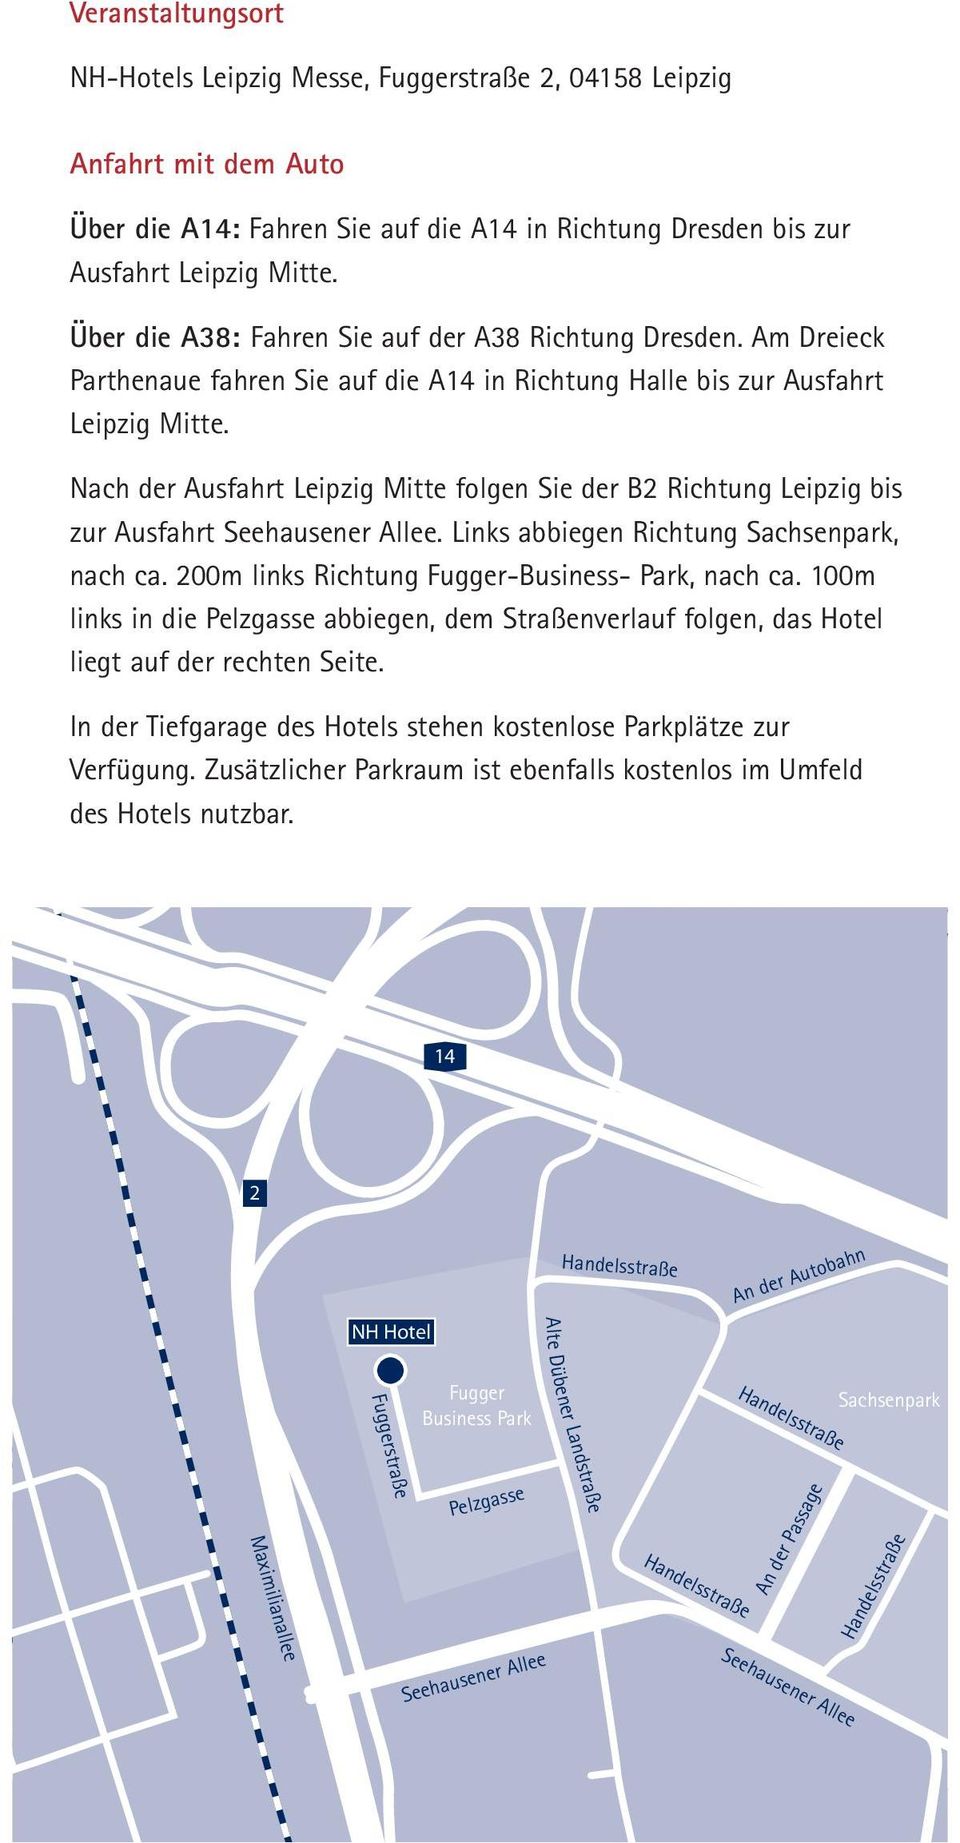 Nach der Ausfahrt Leipzig Mitte folgen Sie der B2 Richtung Leipzig bis zur Ausfahrt Seehausener Allee. Links abbiegen Richtung Sachsenpark, nach ca. 200m links Richtung Fugger-Business- Park, nach ca.